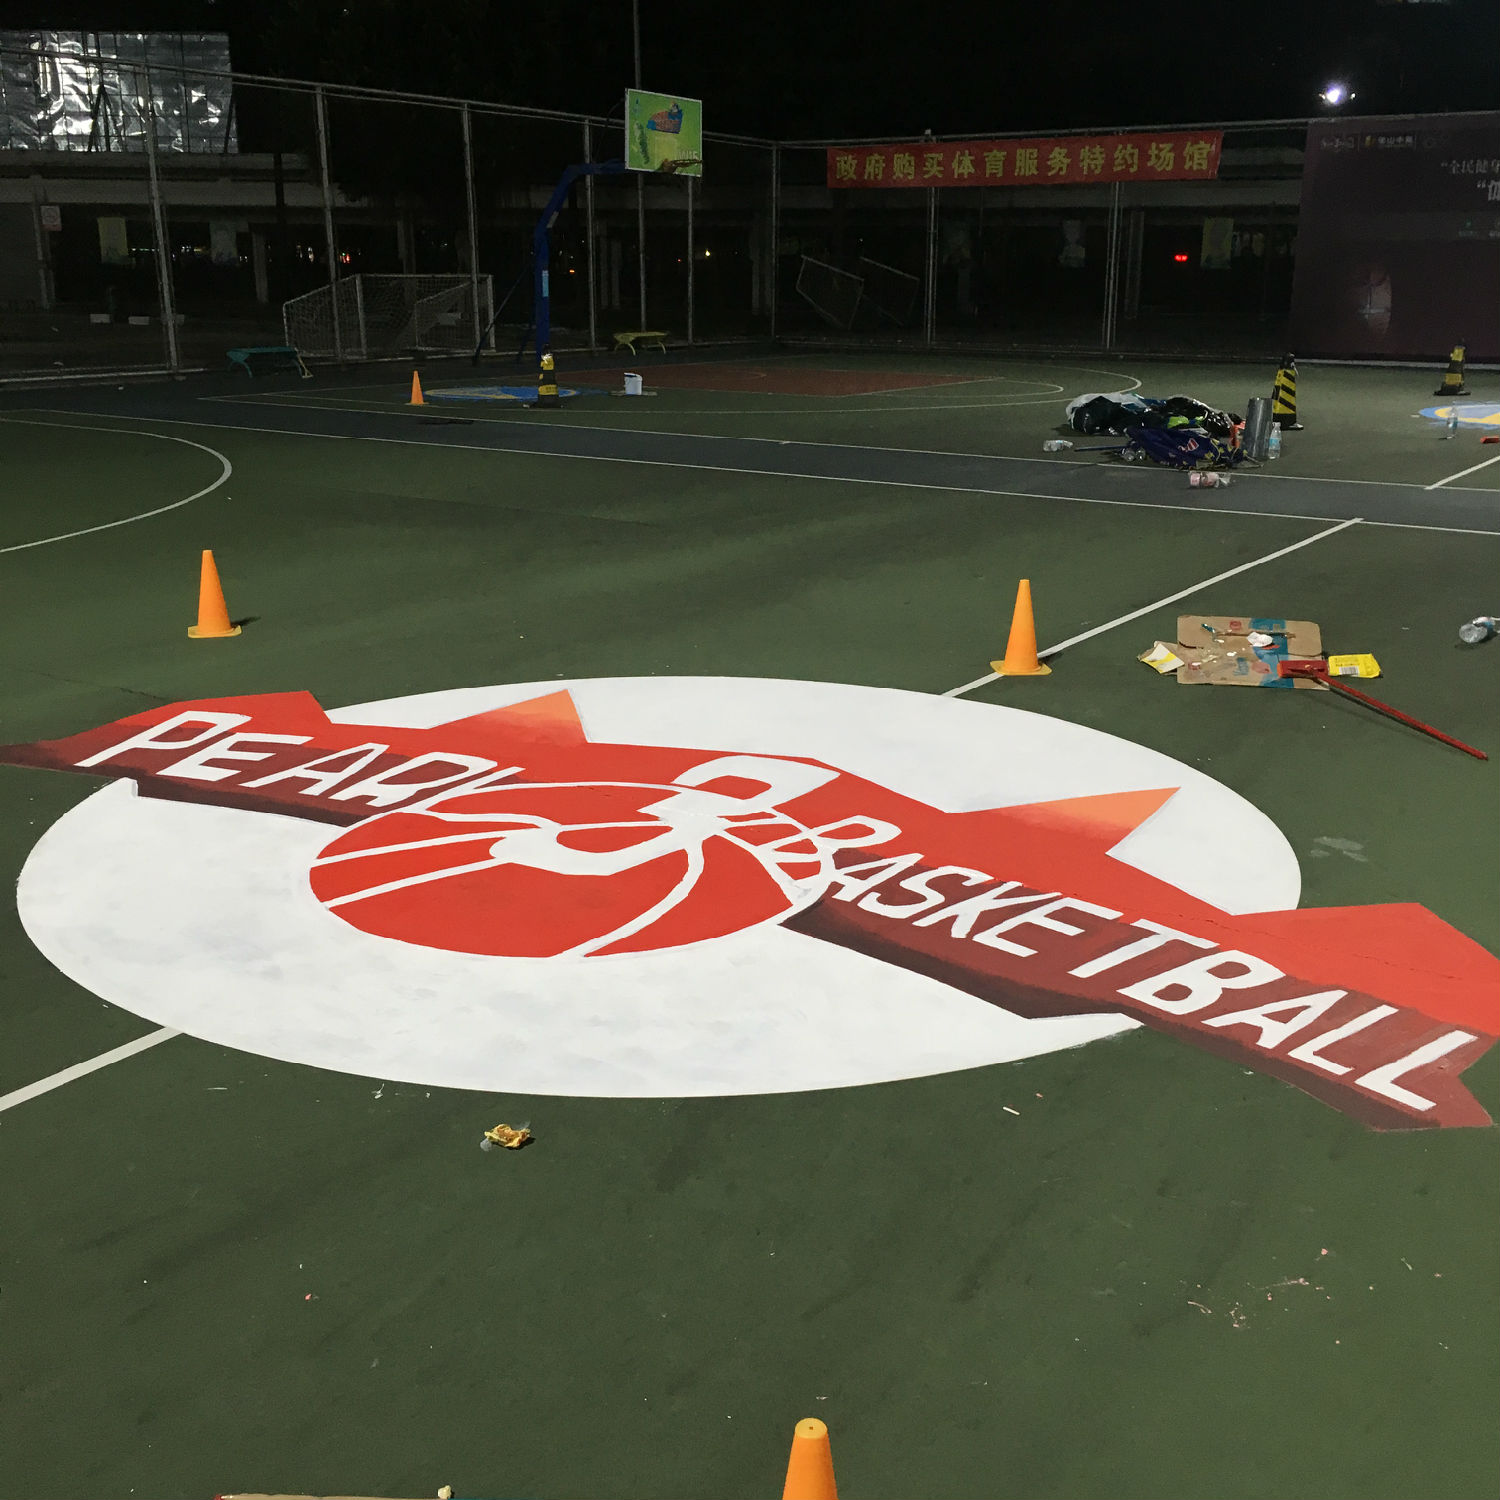 三人篮球赛 球场涂鸦